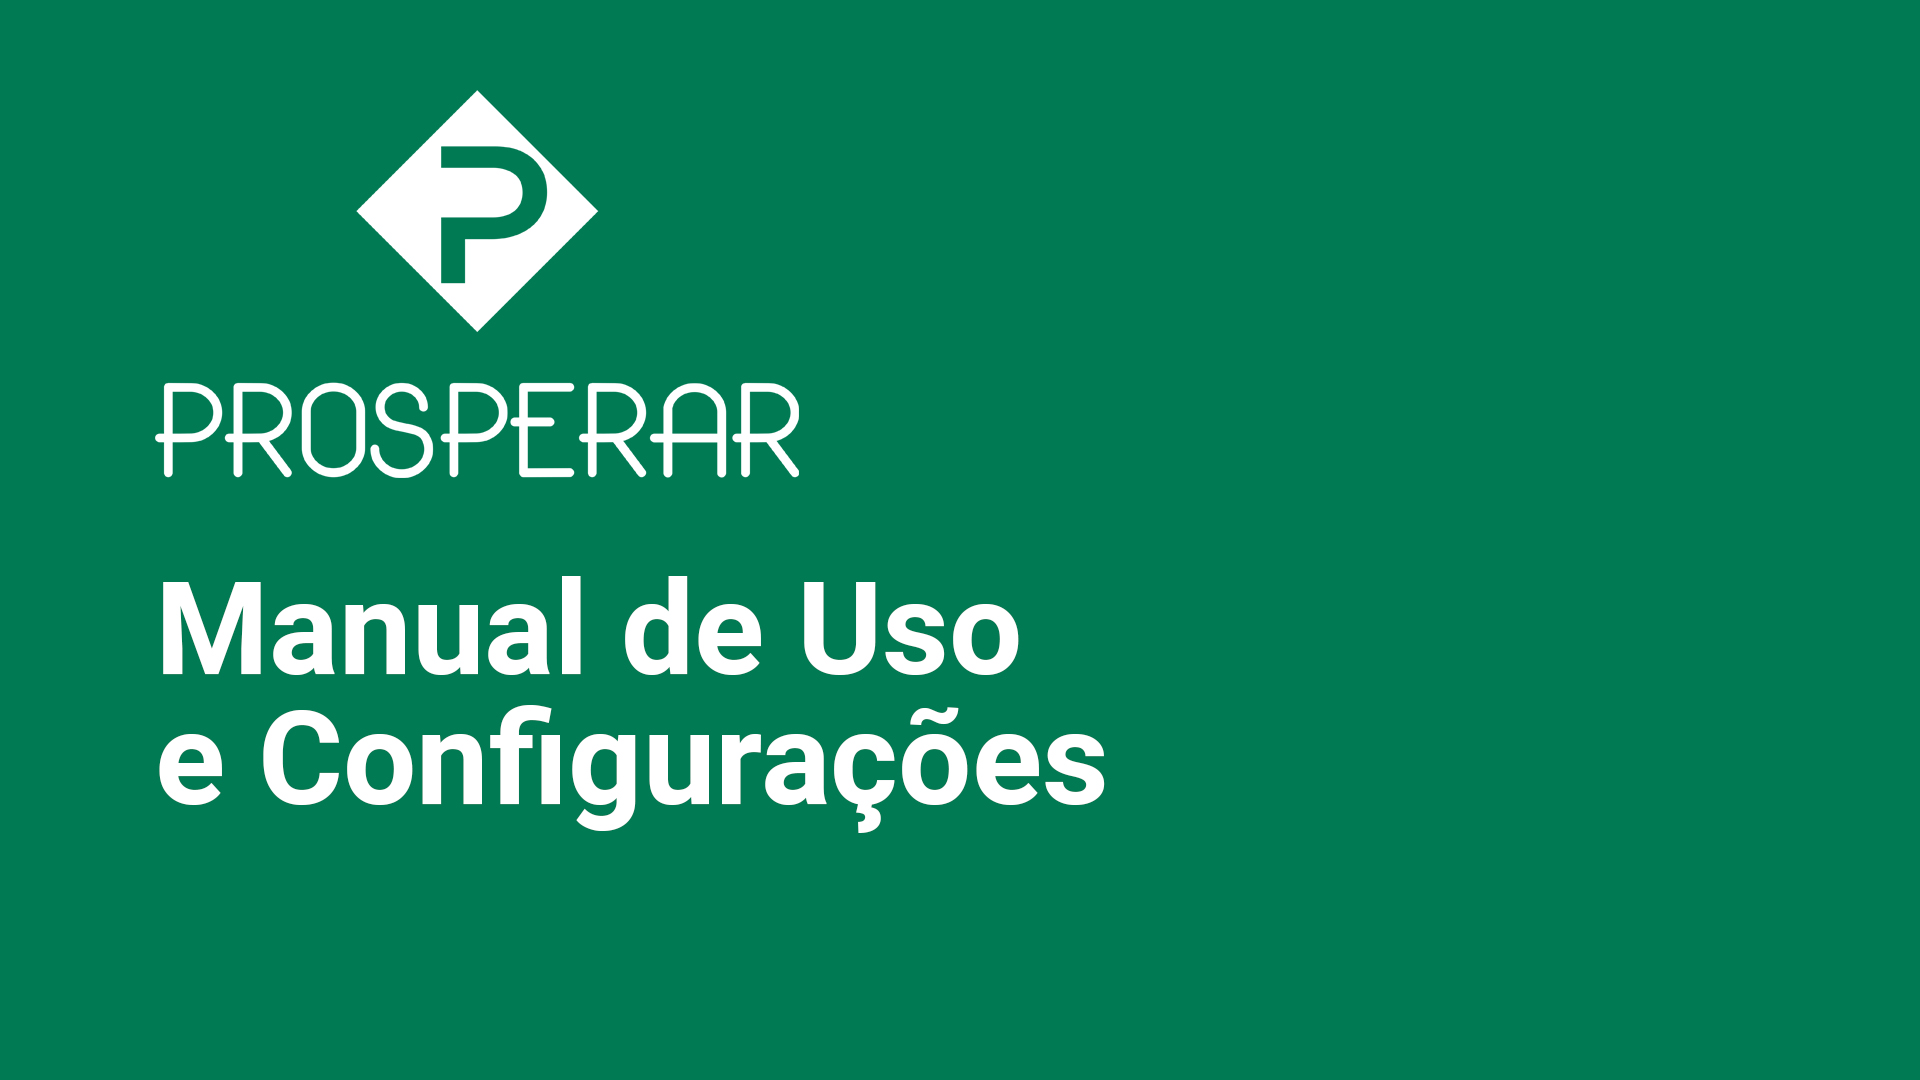 Manual de uso prosperar.net.br: Instruções gerais